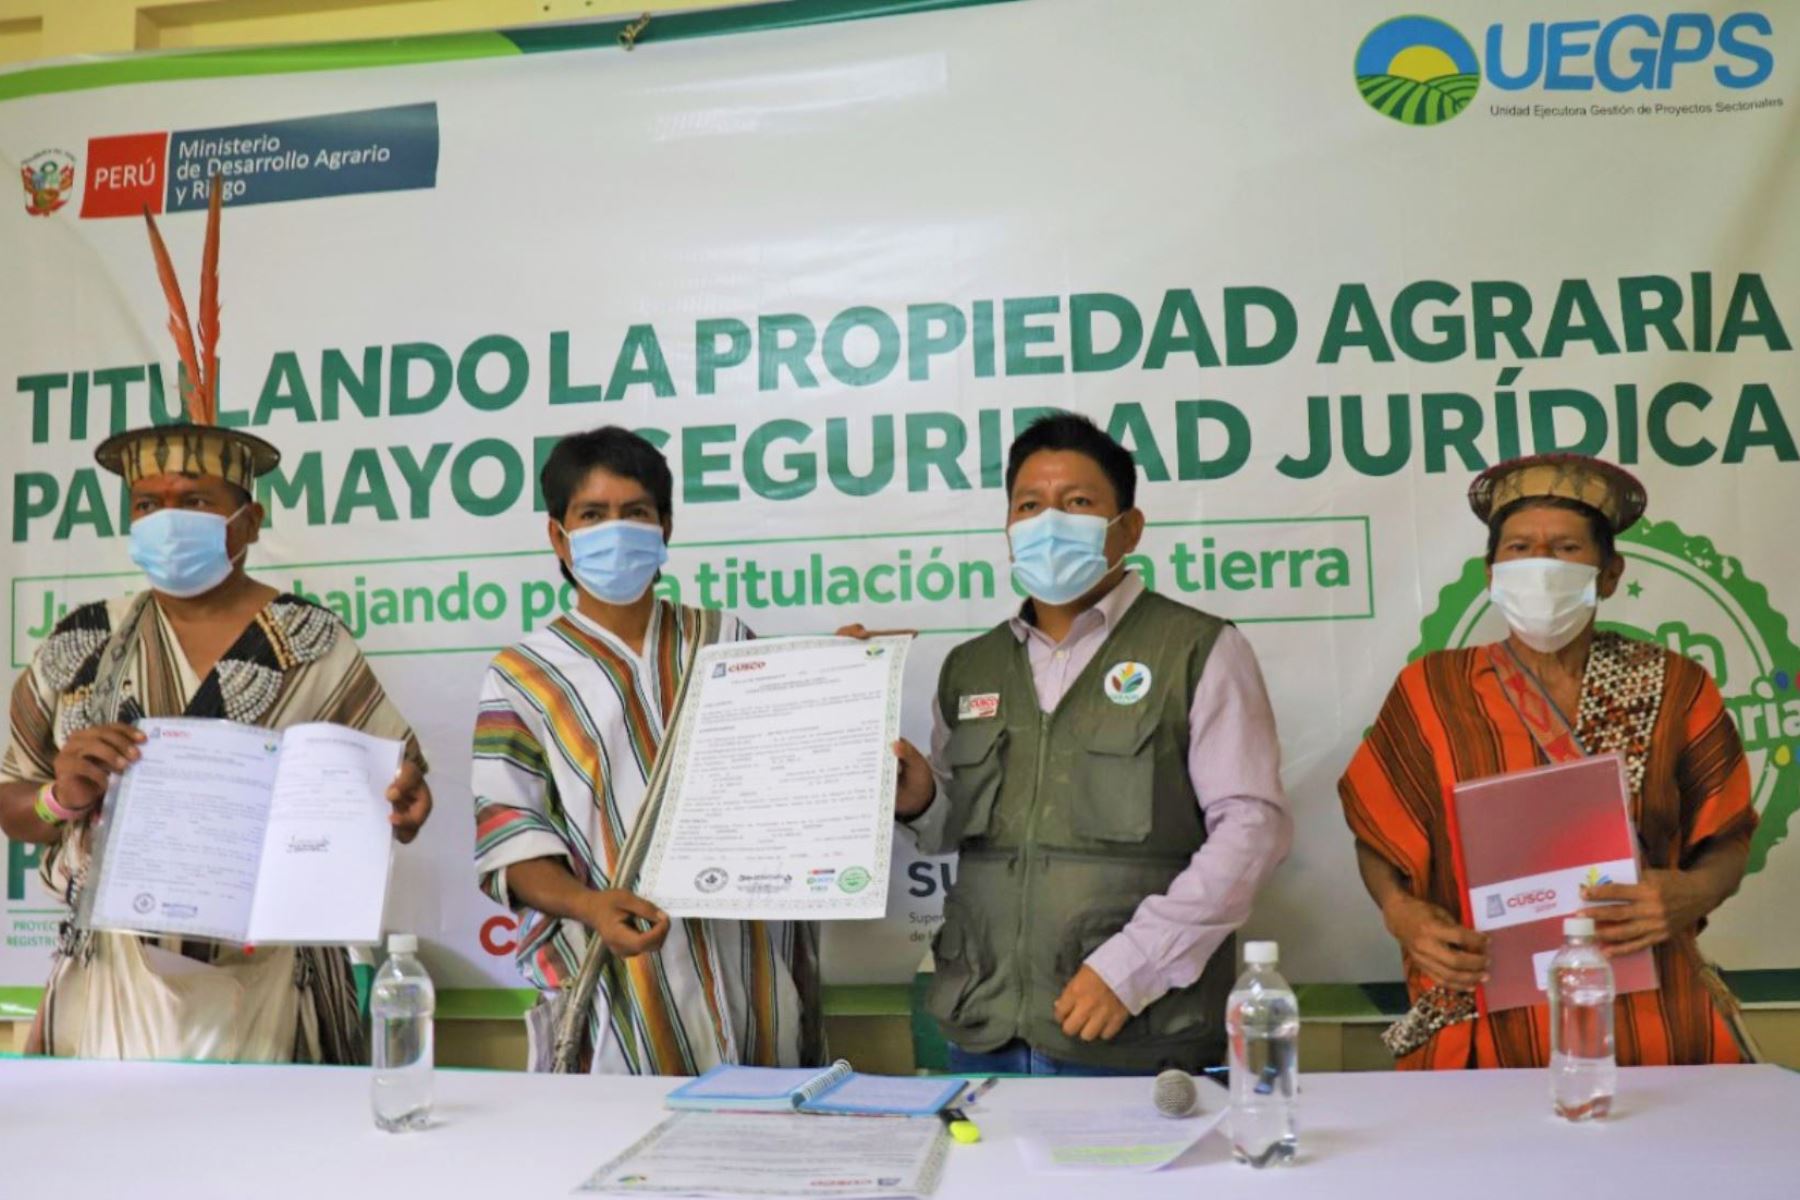 El Ministerio de Desarrollo Agrario y Riego y el Gobierno Regional de Cusco entregaron títulos de propiedad a dos comunidades nativas del Vraem.